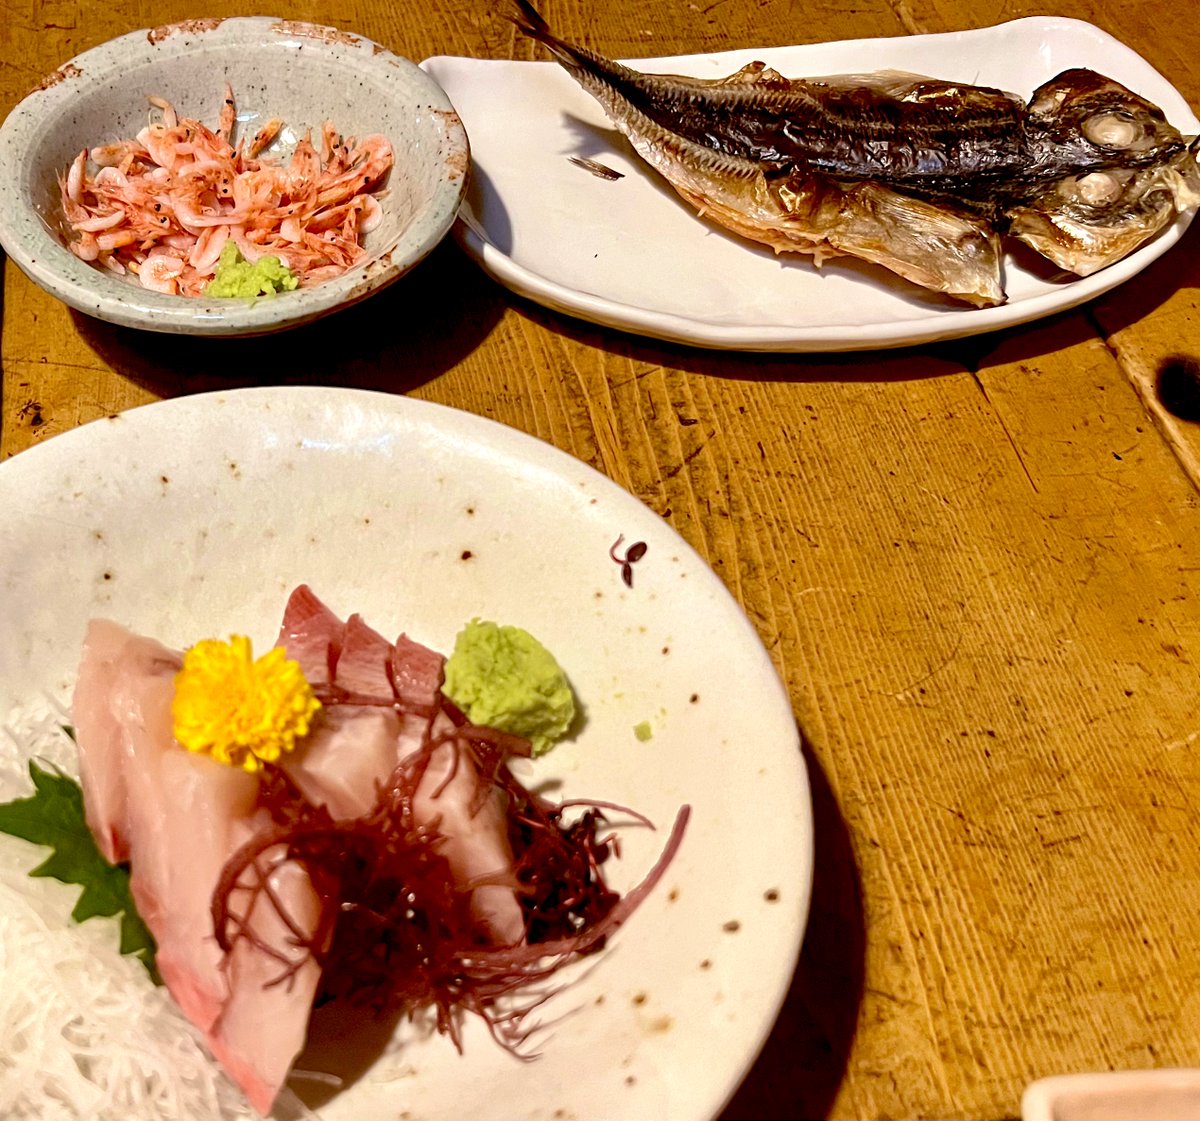 美味しいものもいっぱい食べてきました！
静岡来てさわやかは絶対に外せない🥩🍃
仲見世通りの食べ歩きも楽しいし、1番美味しかったのは桜えびの釜揚げ！！
日本で桜えびの漁ができるのは駿河湾のみらしく、ふかふかな釜揚げが食べれるのも静岡だけだそうですよ😳
隠れ絶品料理なので是非食べてみて🦐